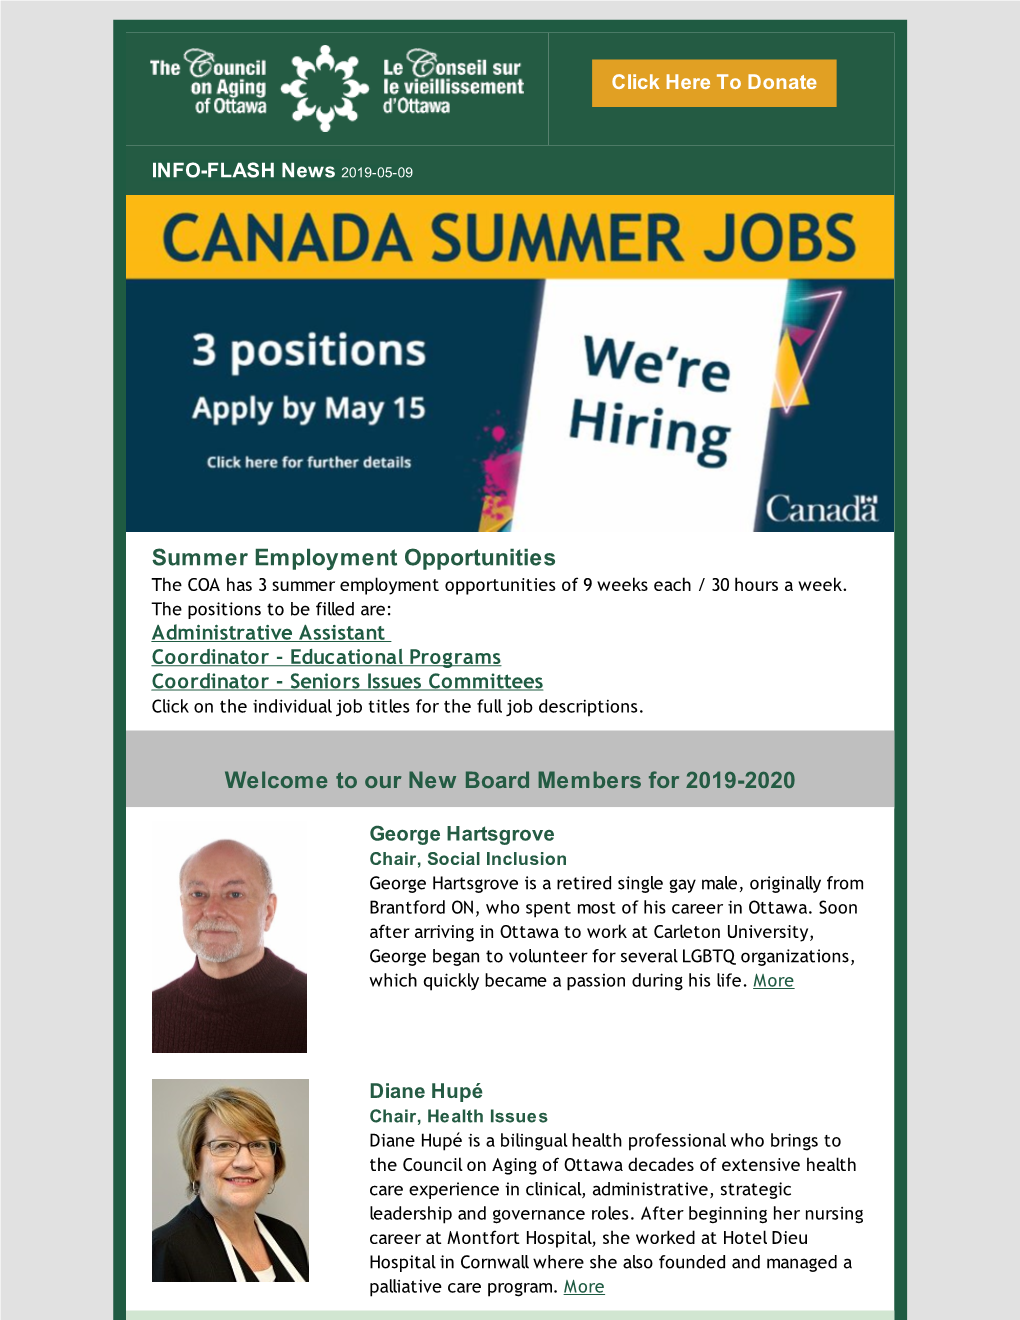 Summer Employment Opportunities the COA Has 3 Summer Employment Opportunities of 9 Weeks Each / 30 Hours a Week